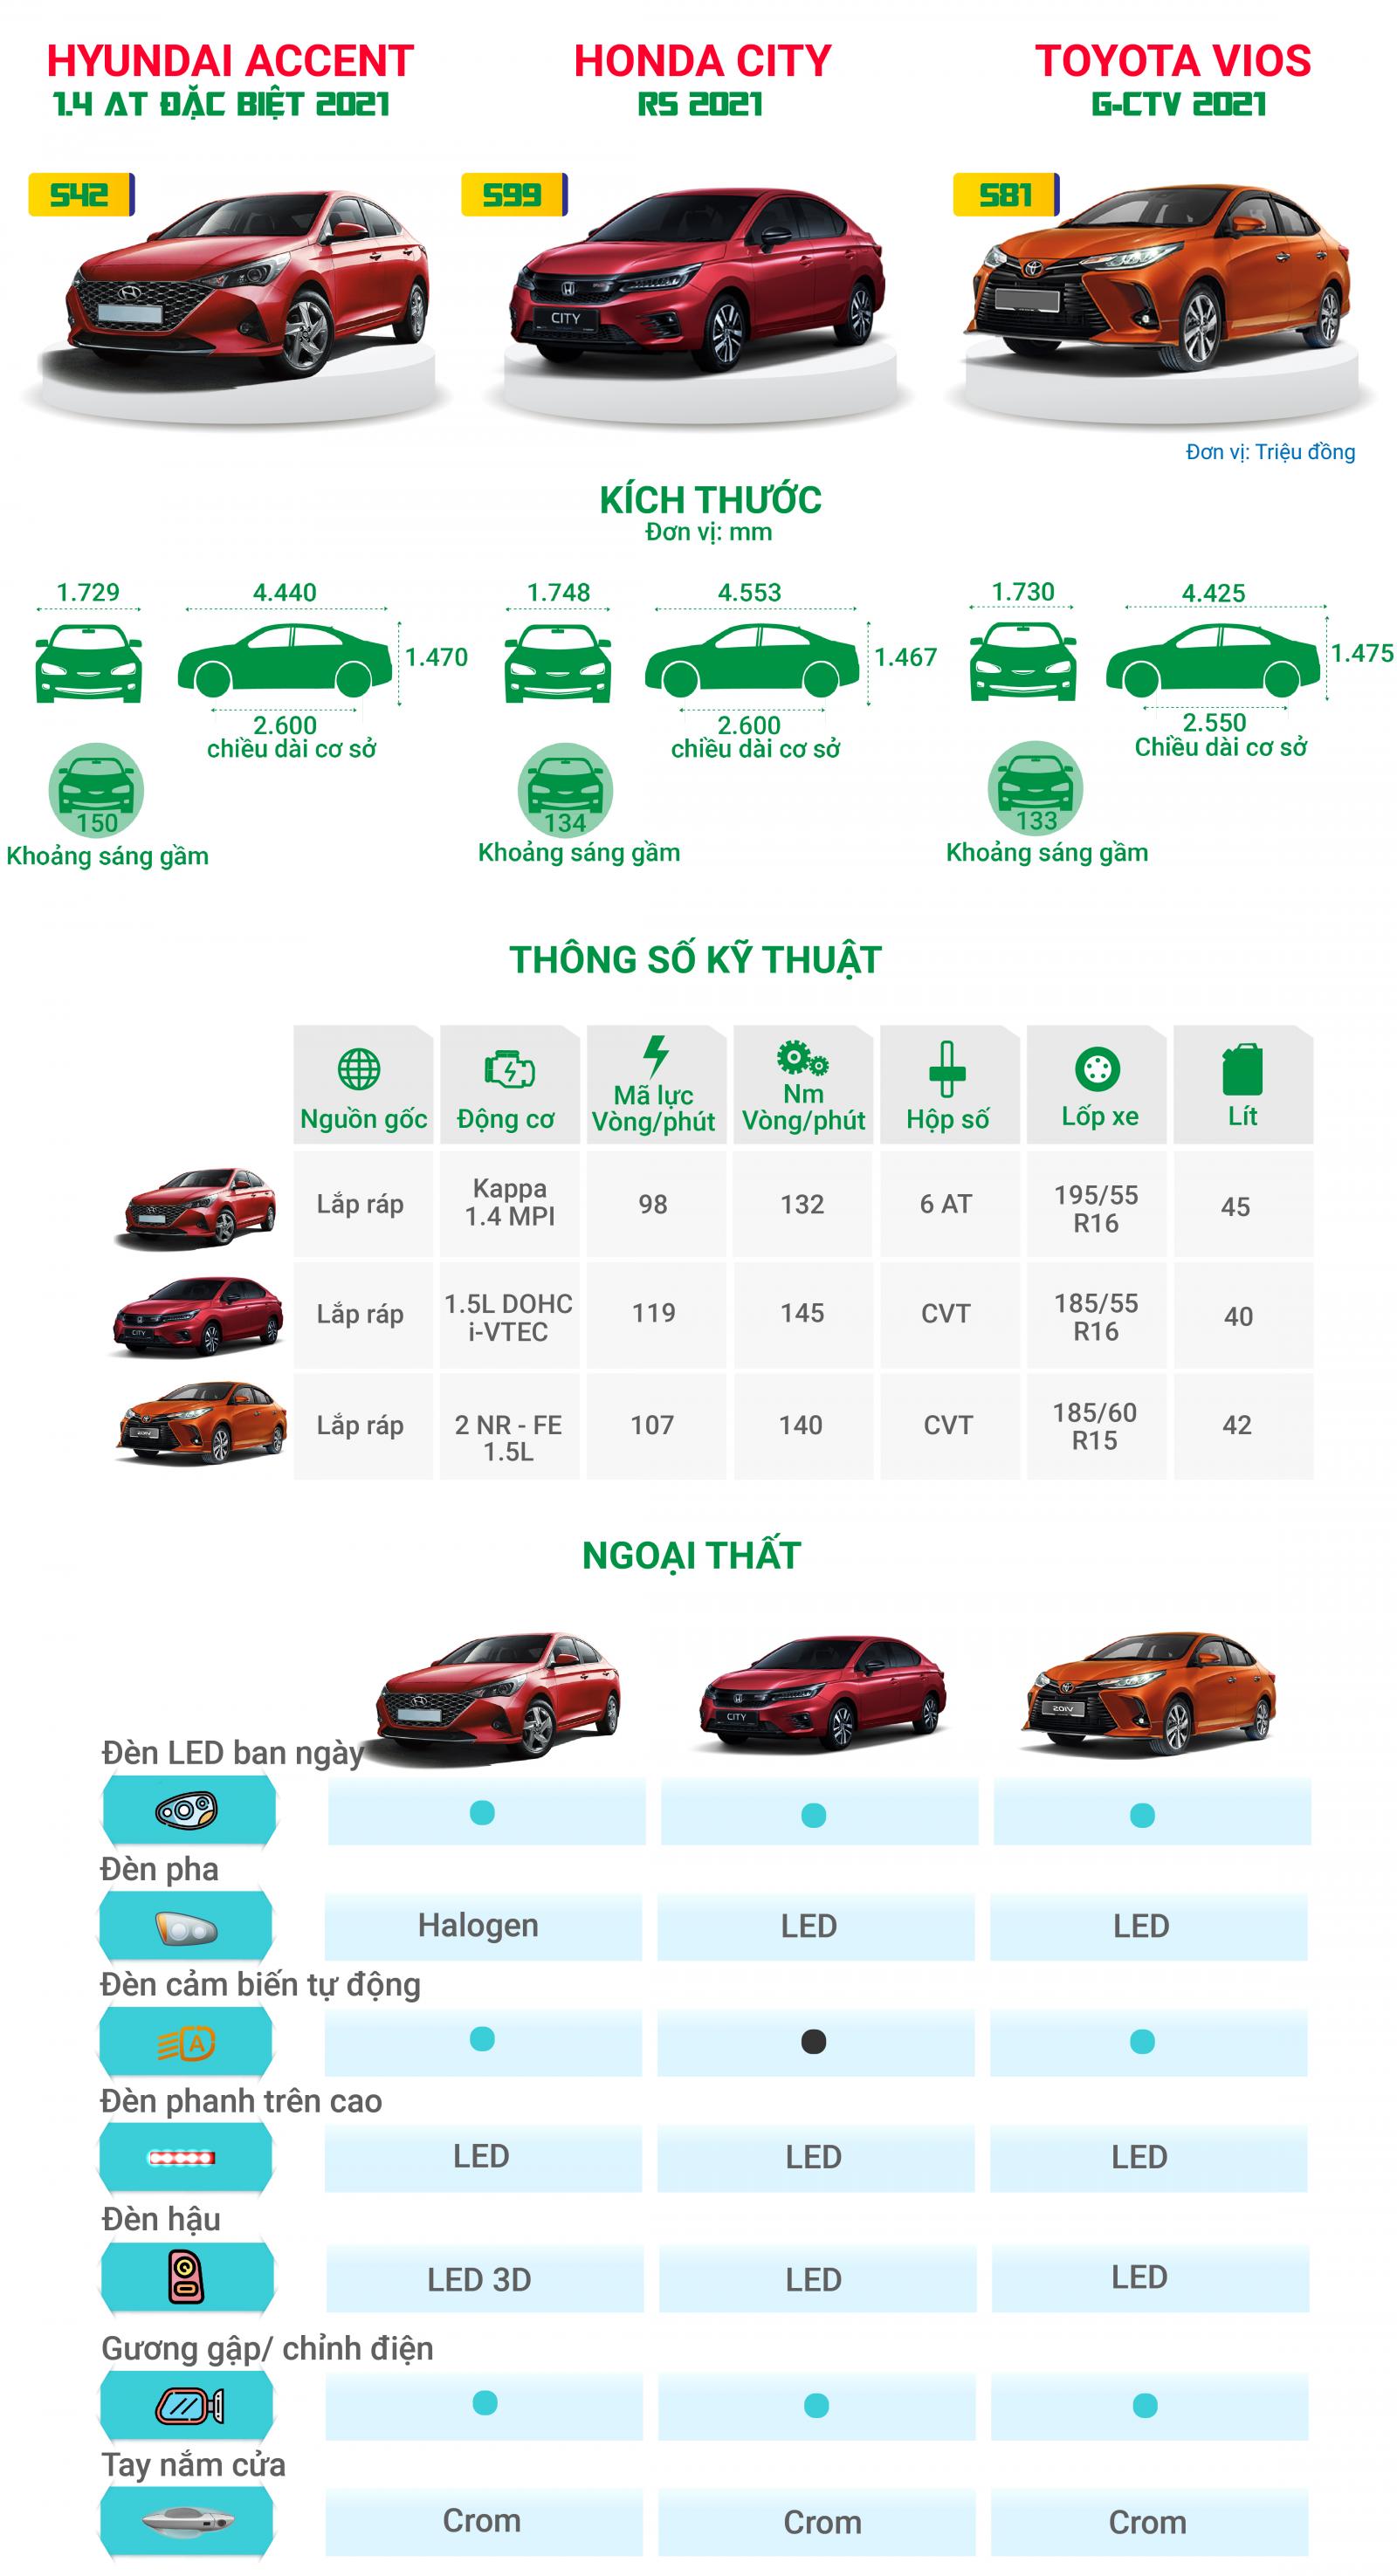 Toyota Vios, Hyundai Accent và Honda City có gì để cạnh tranh với nhau? .